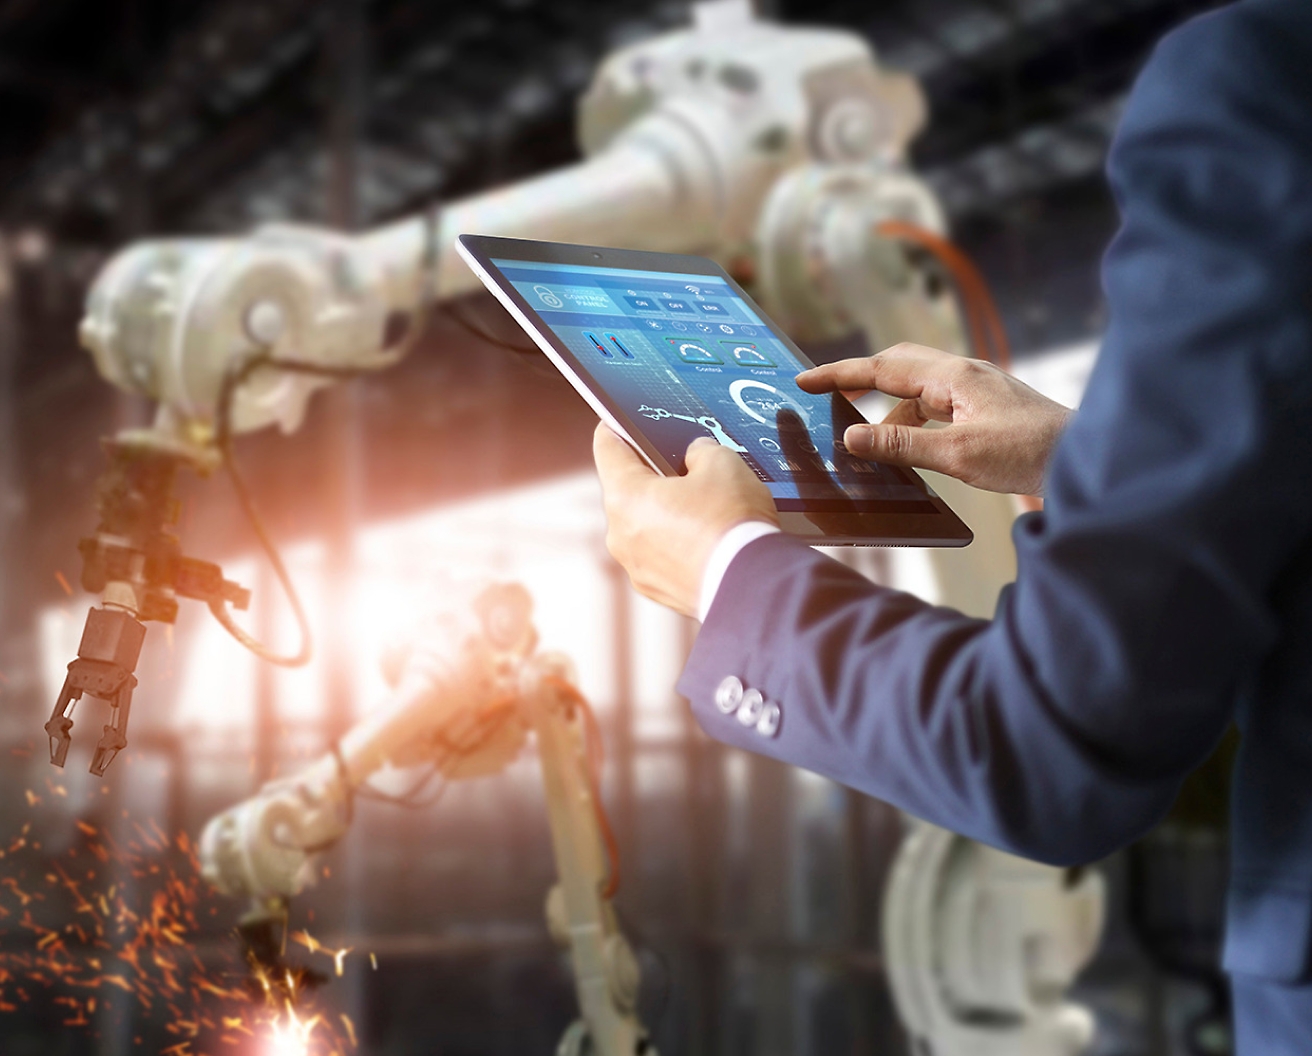 Una persona controla en una fábrica unos brazos robóticos mediante una tableta, lo que pone de relieve la avanzada tecnología de automatización.